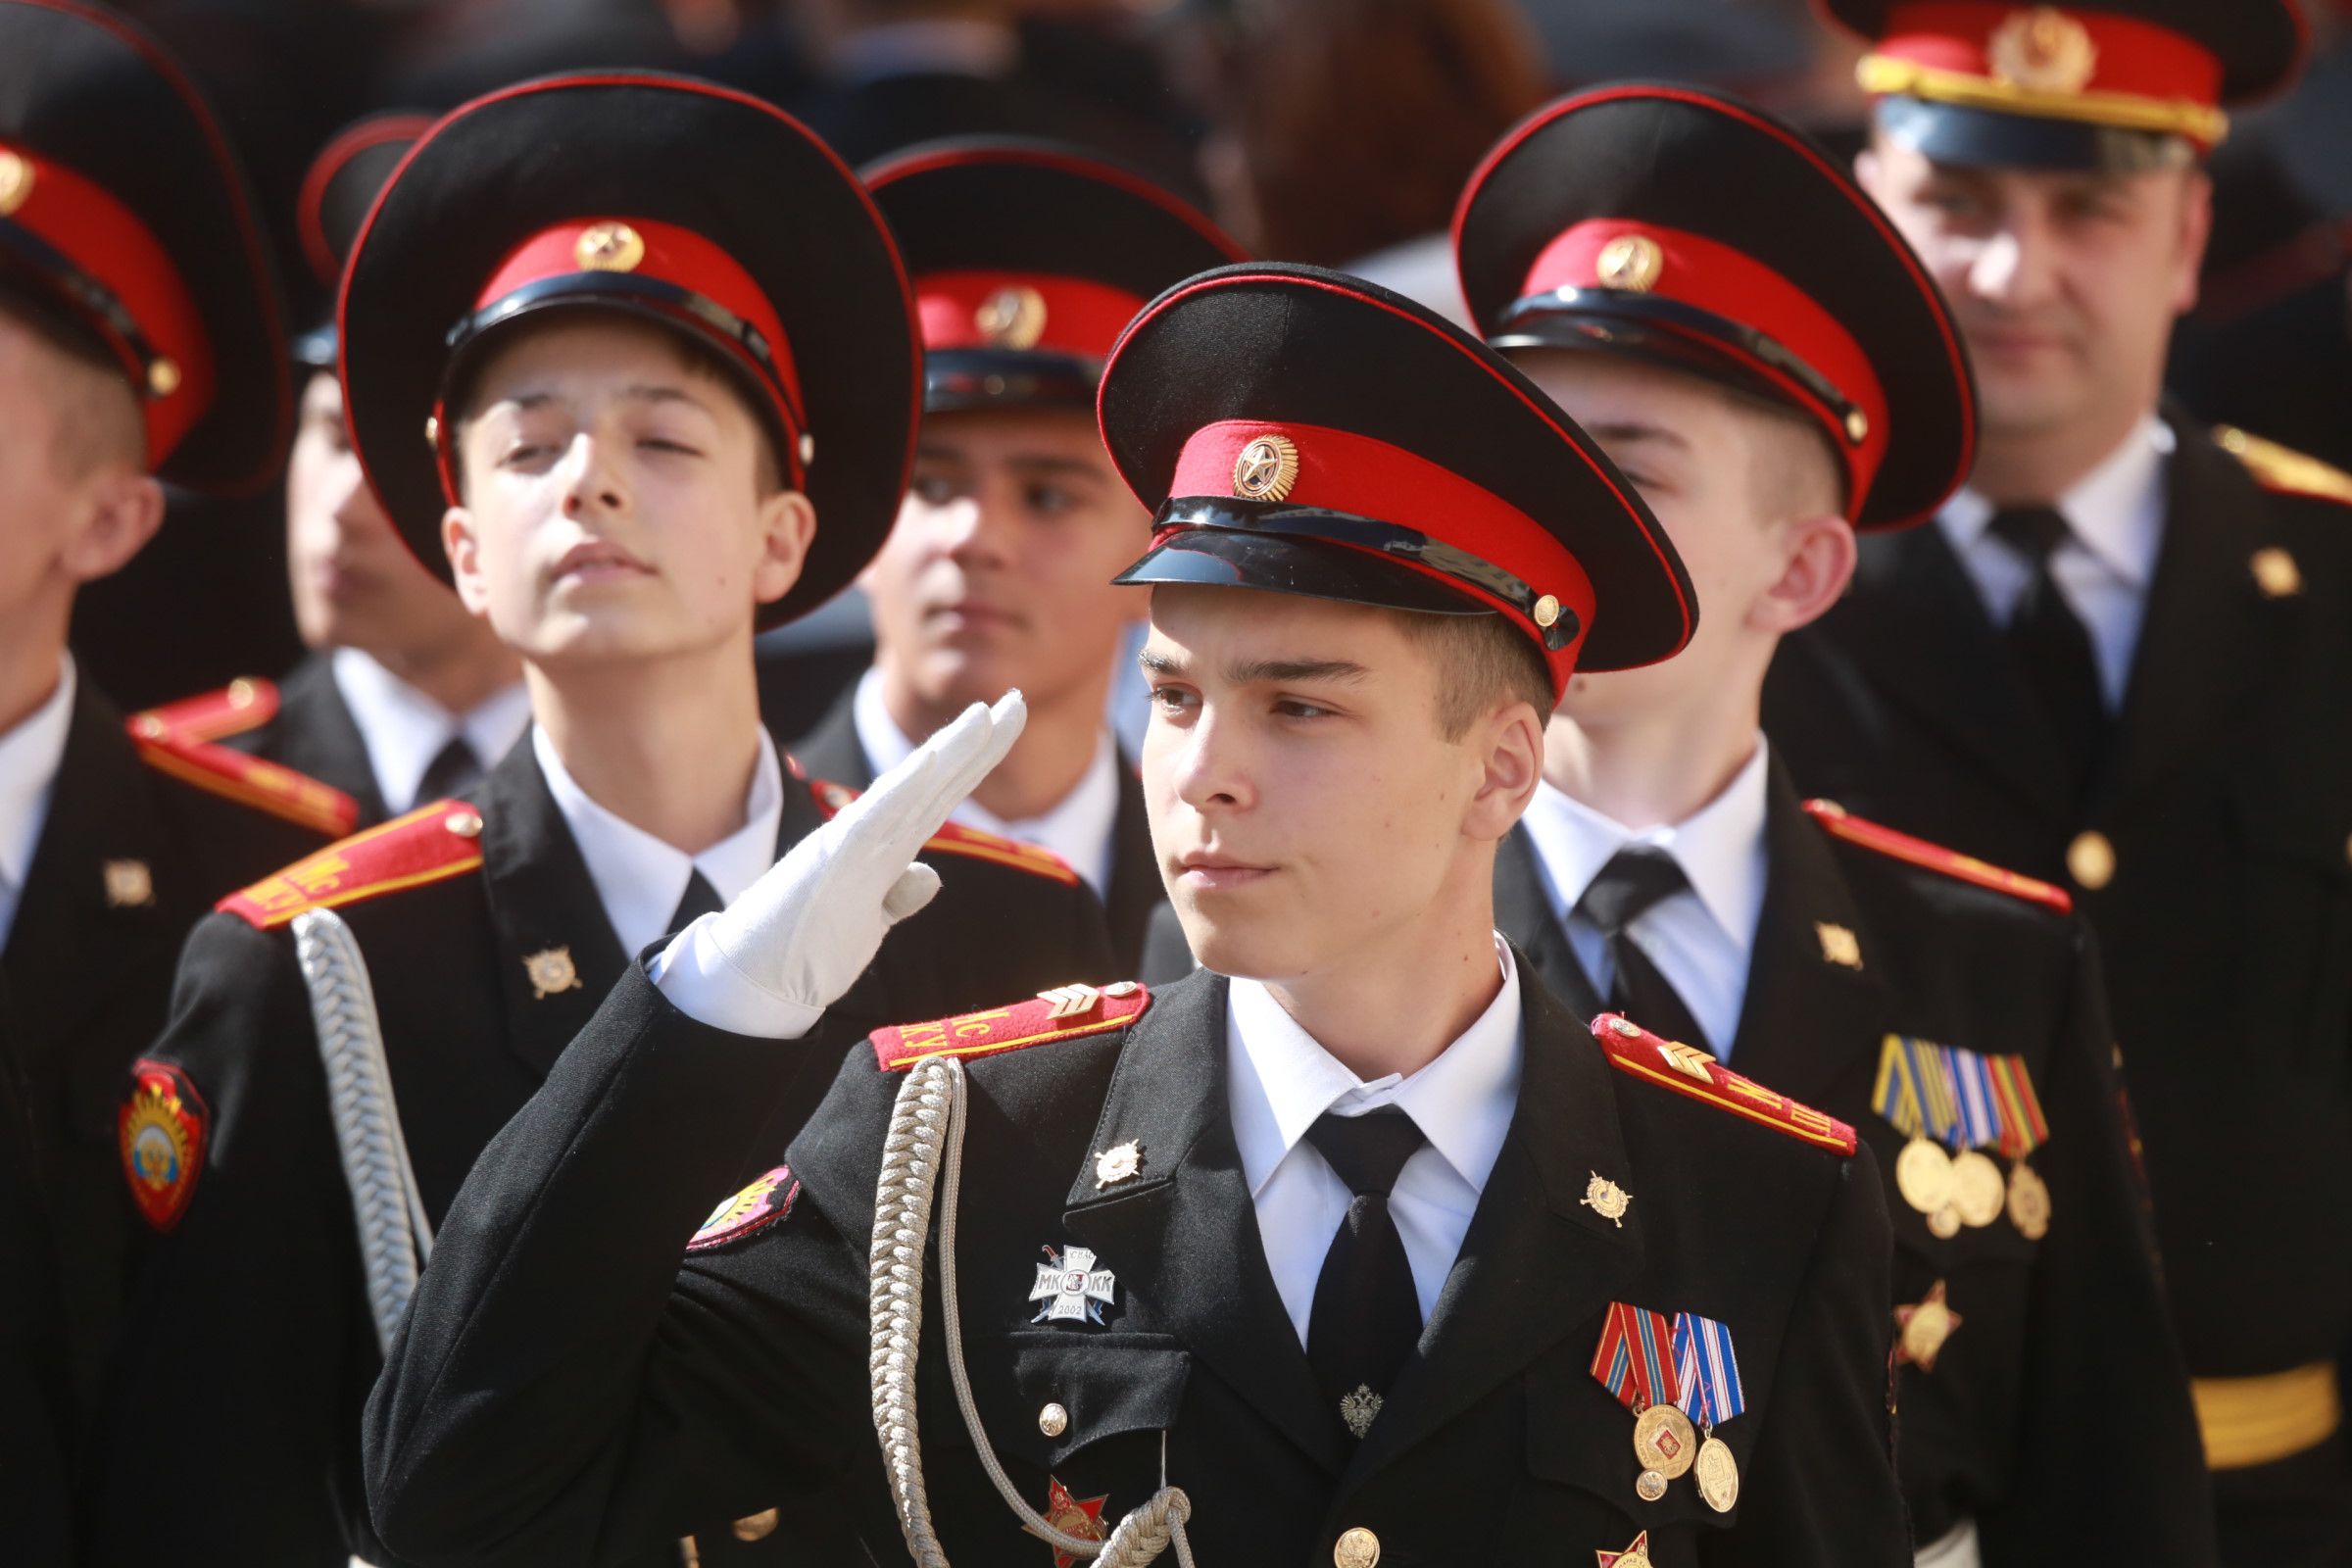 Кадетский класс форма. Кадетская школа в Ясенево. Форма кадетов. Военная школа. Мальчик кадет.